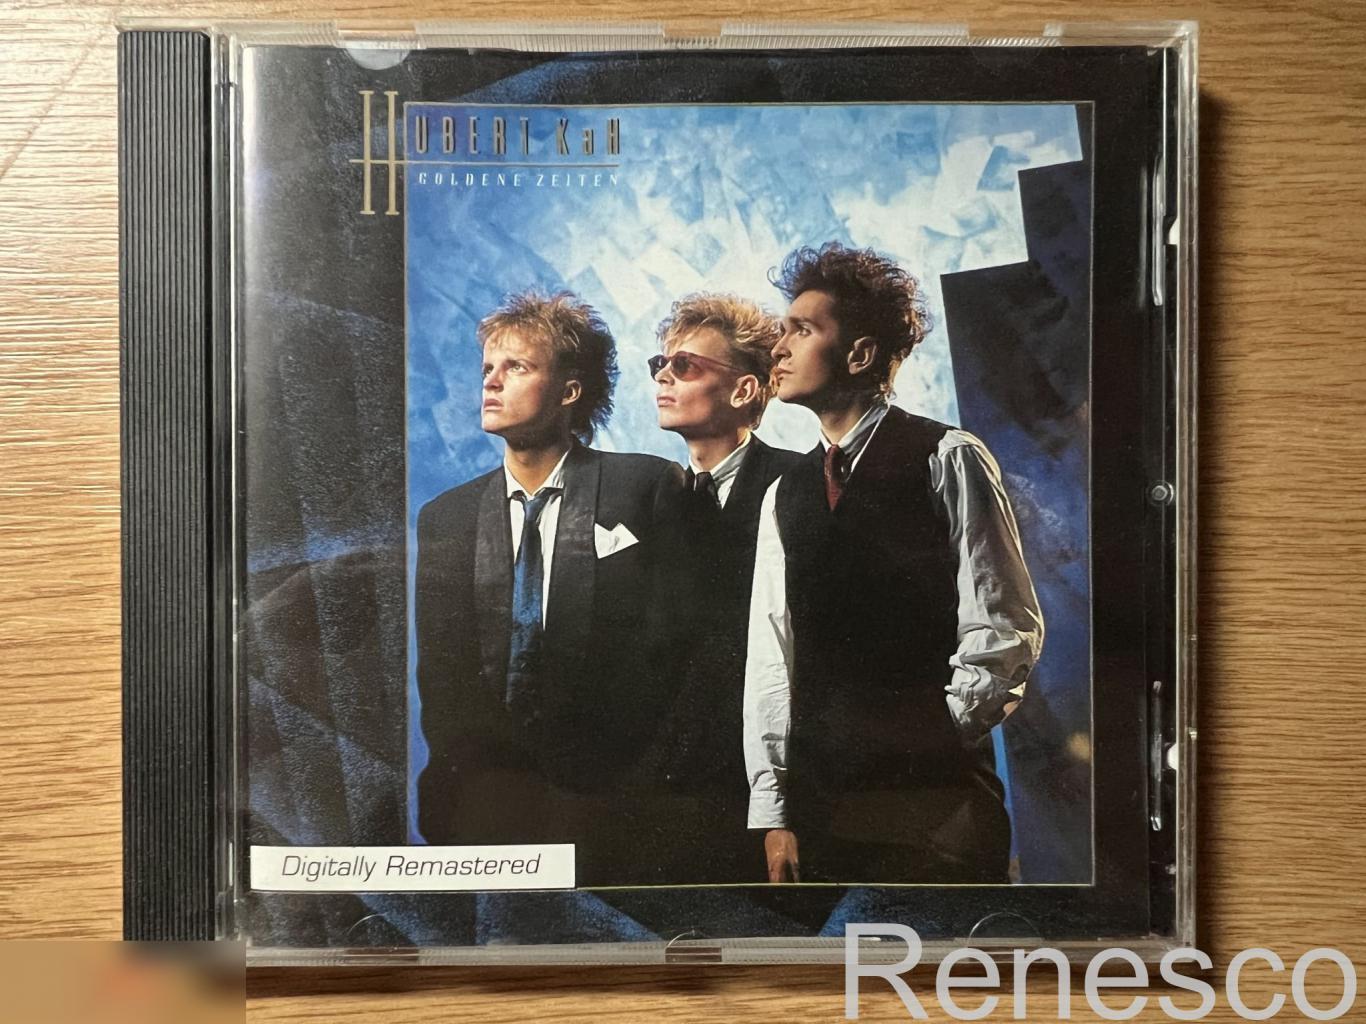 Hubert Kah – Goldene Zeiten (Germany) (1996) (Remastered) (Reissue)